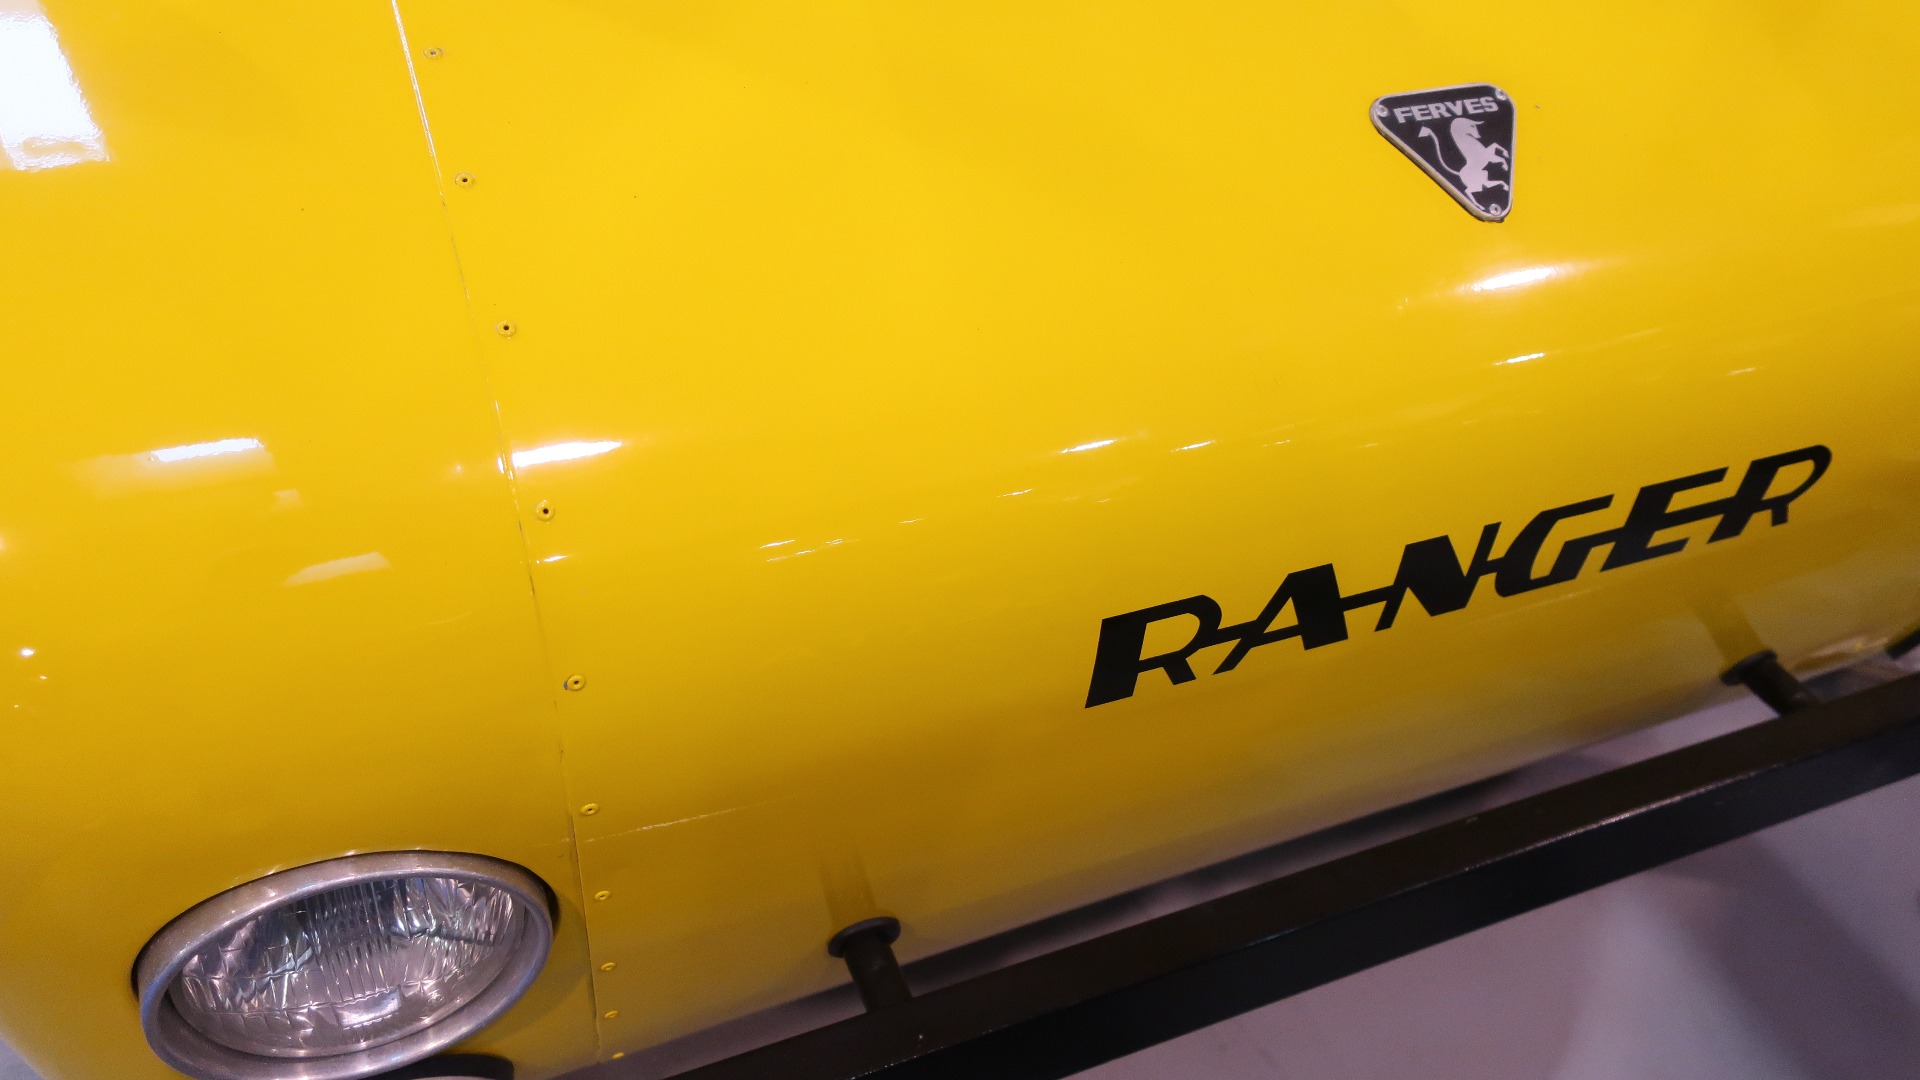 Legg merke til Ferves-logoen som ser ut som en krysning mellom Ferrari og Lamborghini-logoene.